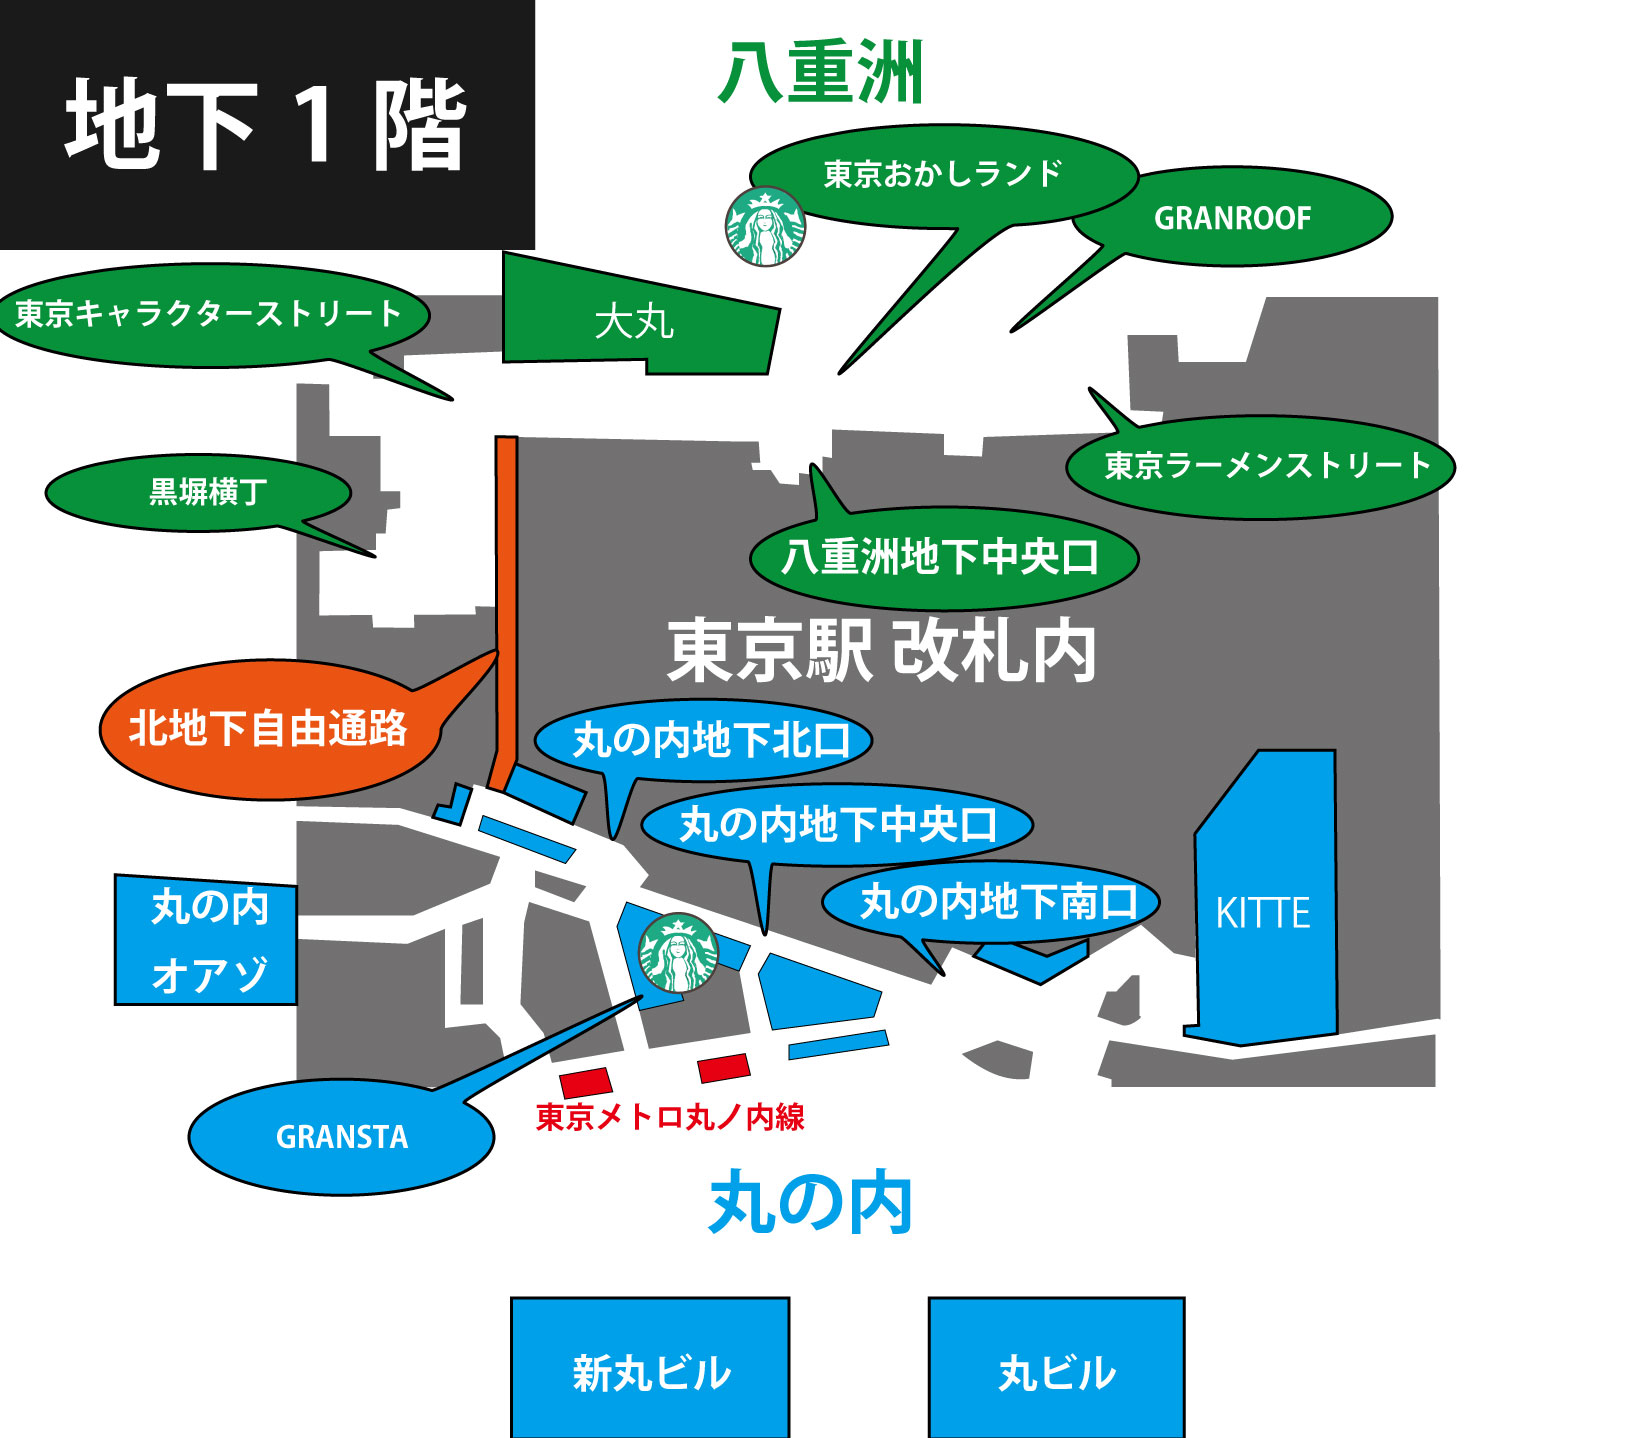 東京駅の改札を通らずに八重洲側から丸の内側へ またはその逆へ向かうルート 東京スパイシー